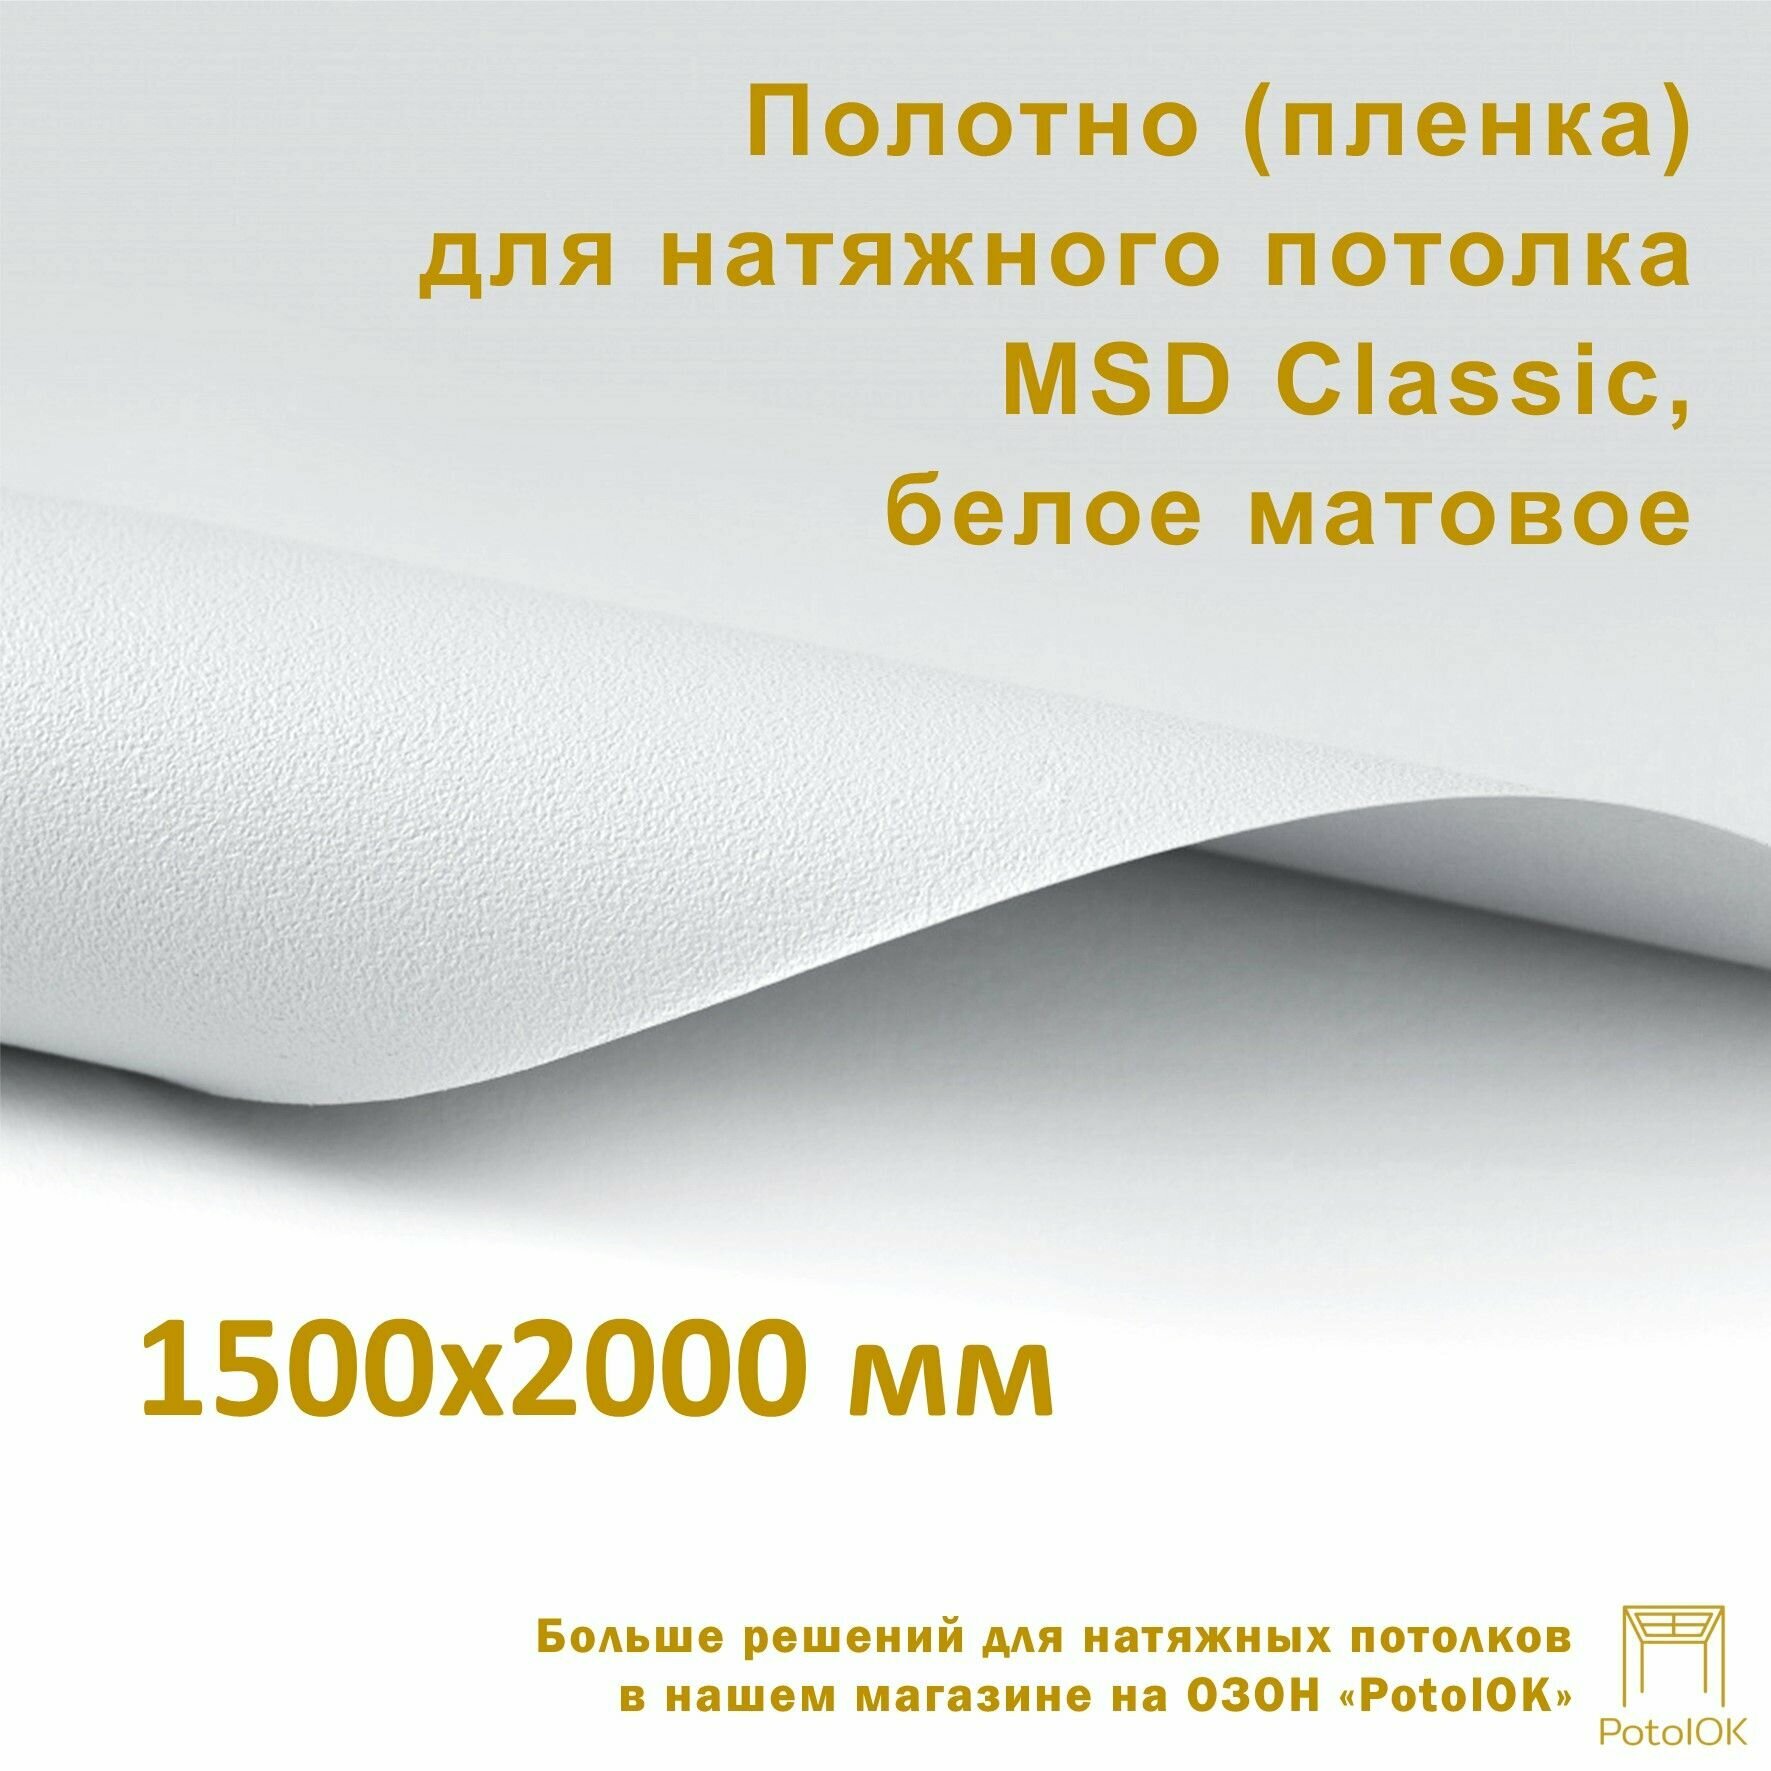 Полотно (пленка) для натяжного потолка MSD CLASSIC, белое матовое, 1500x2000 мм